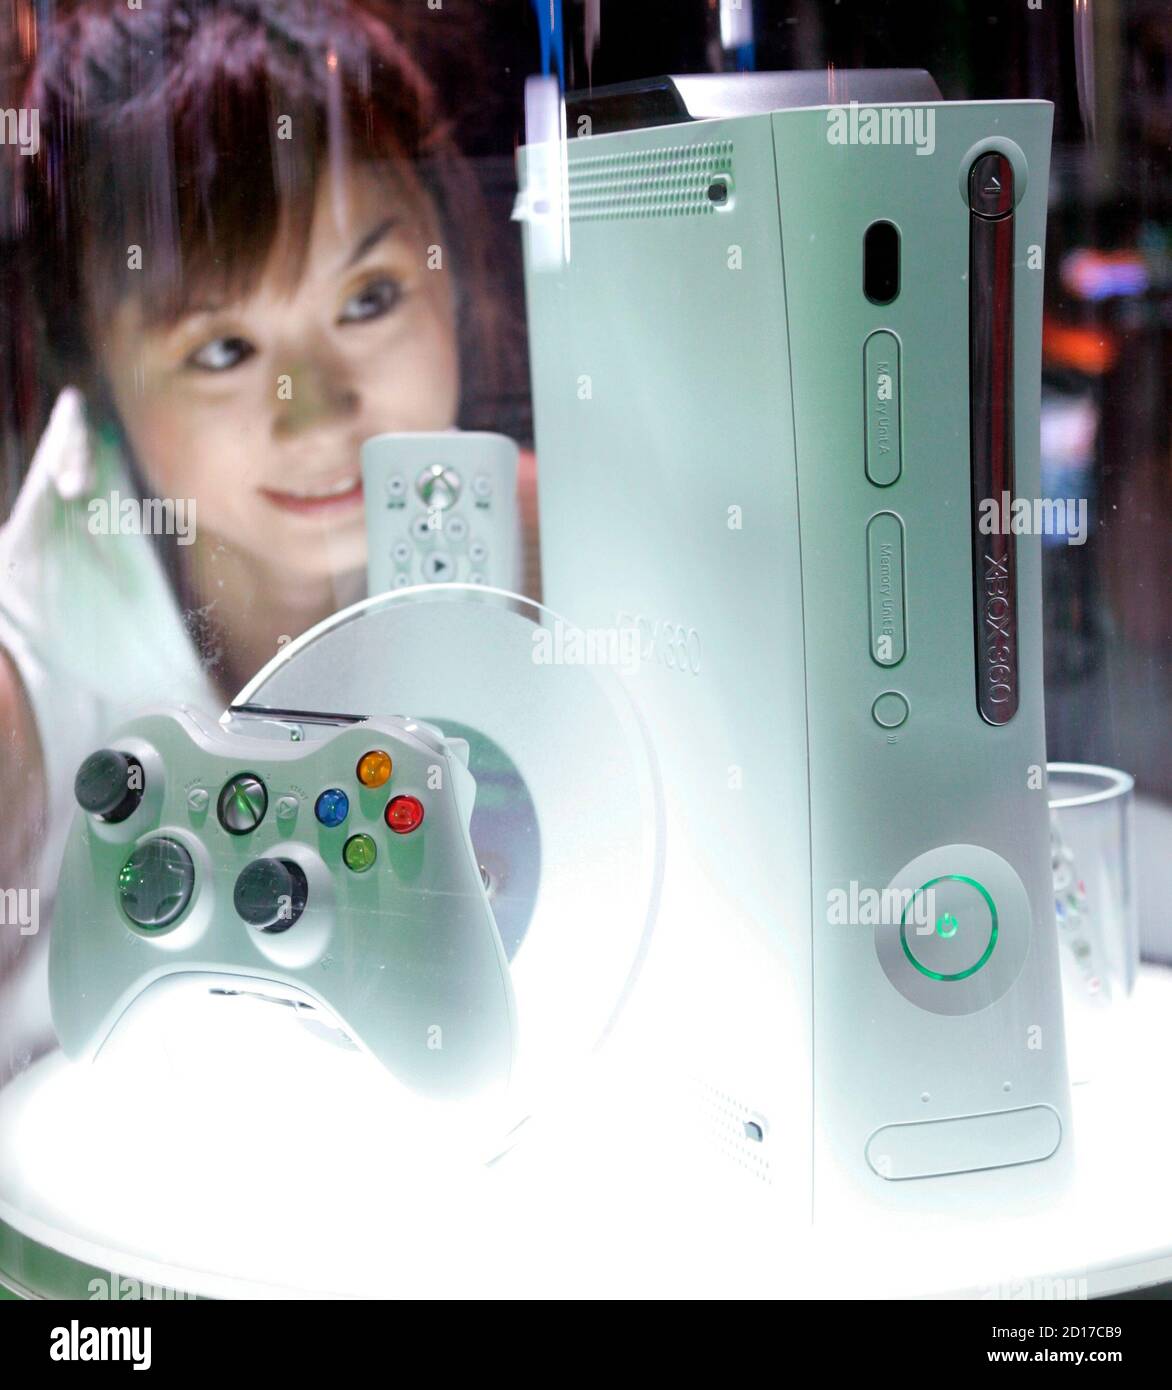 La console de jeux vidéo X-Box de Microsoft Corp reflète les photographes  lors du dévoilement de la nouvelle machine à jeux à Tokyo en mars 10.  Microsoft a déclaré qu'elle entrerait sur